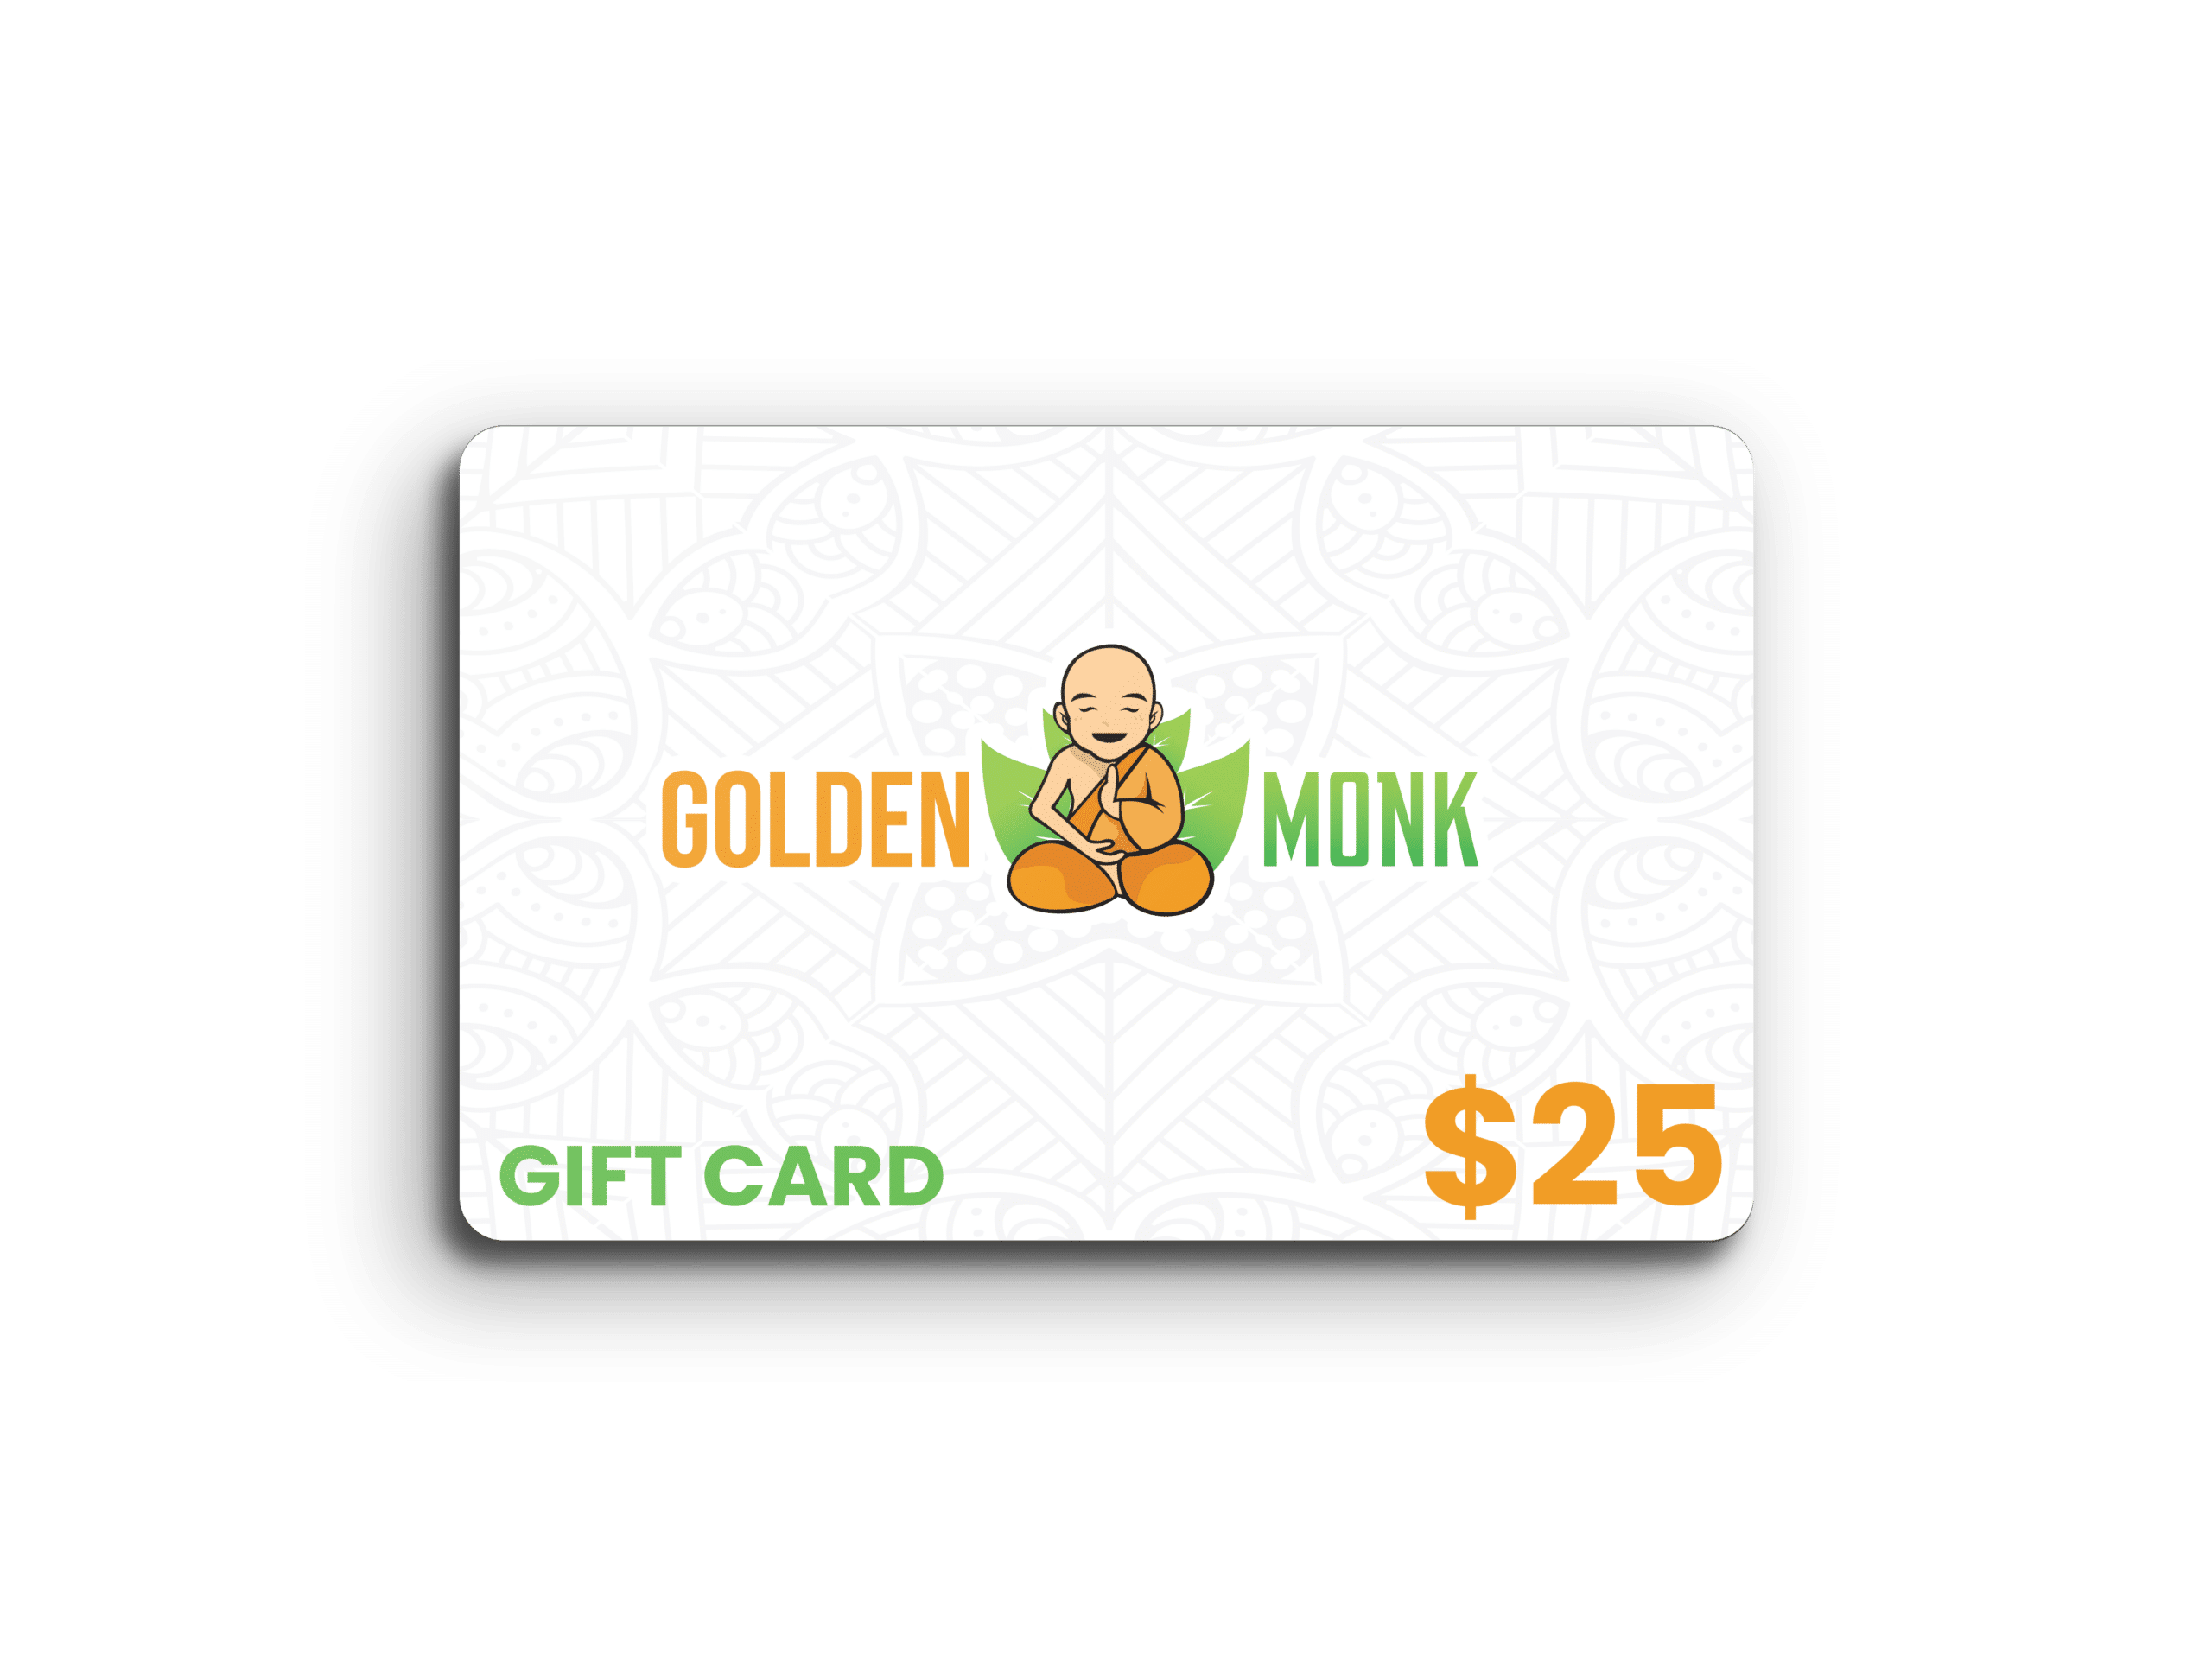 Golden Monk Gift Card